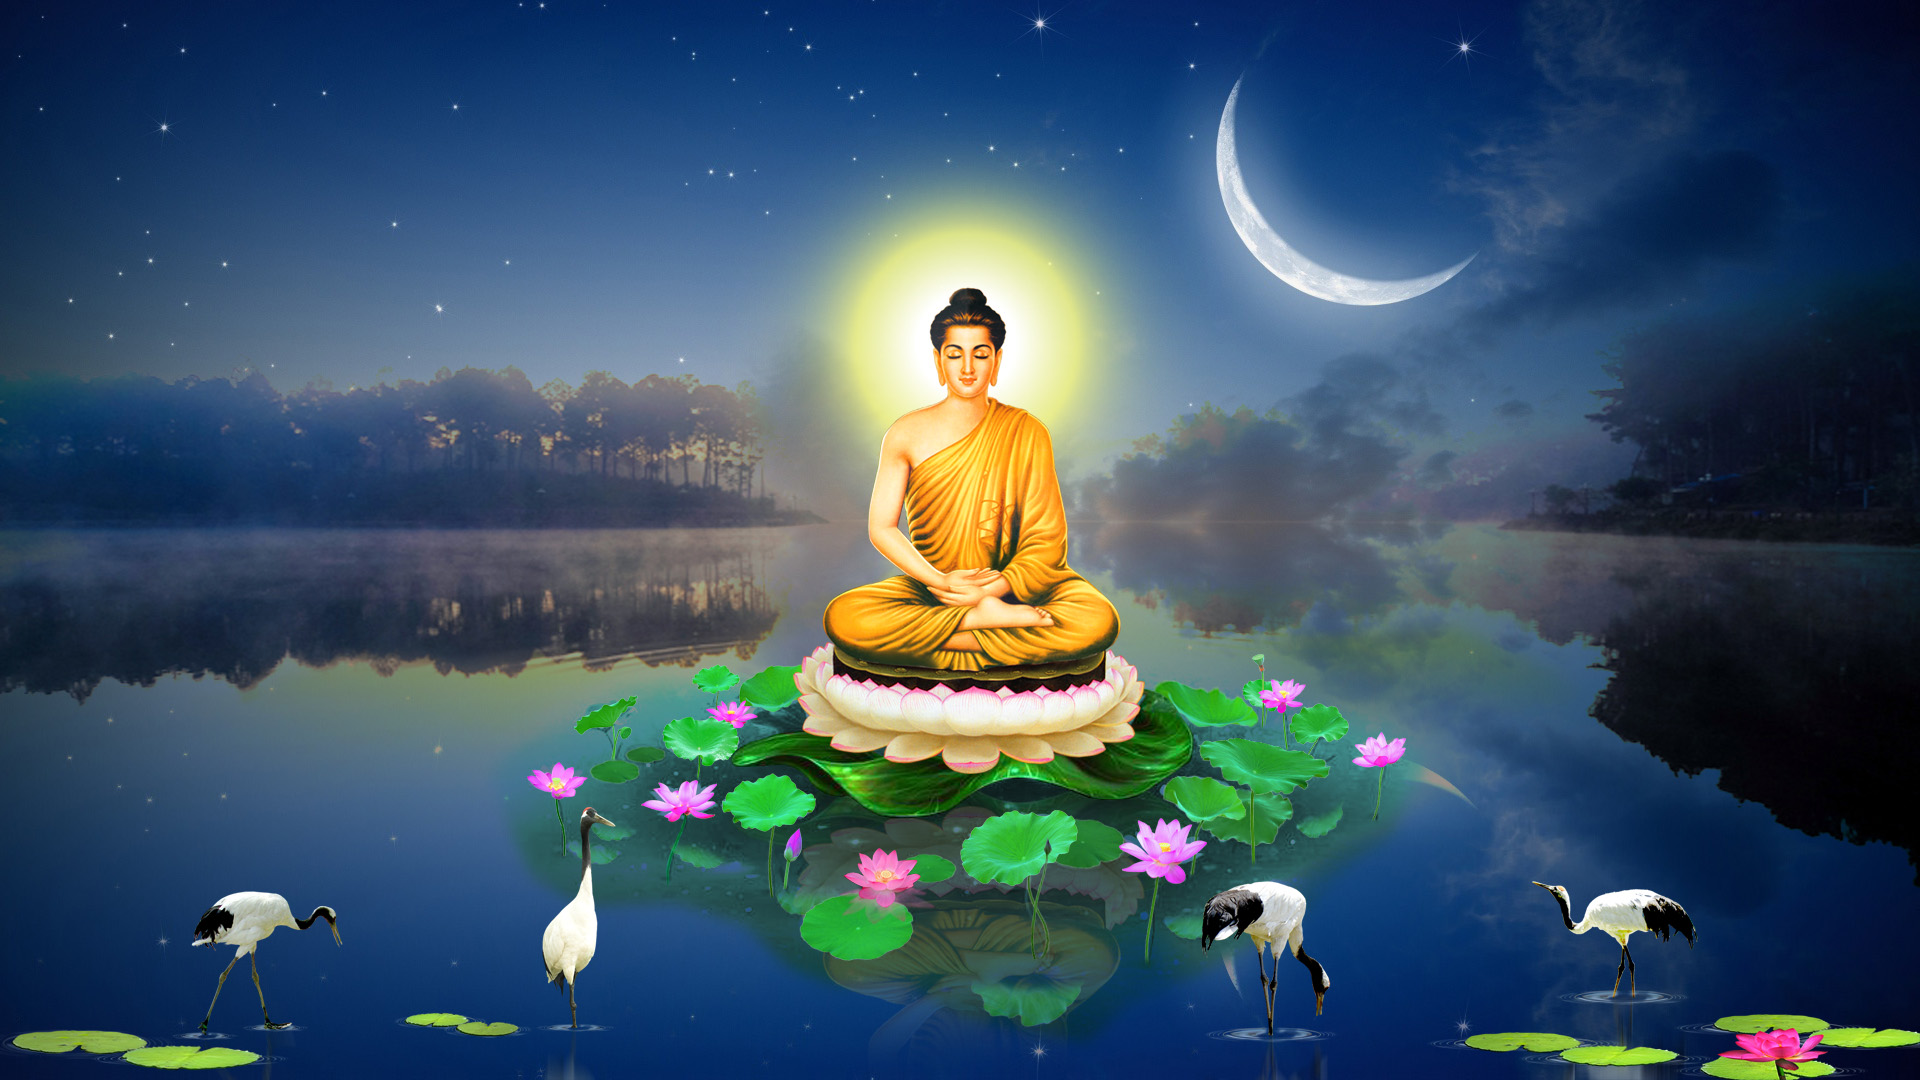 Bổn Sư Thích Ca Mâu Ni Phật - một biểu tượng quan trọng trong đạo Phật và văn hoá duyên dáng của chúng ta. Nếu muốn khám phá thêm về sự tinh tế và phong phú của thế giới cổ điển, hãy xem hình ảnh của vị thánh này.